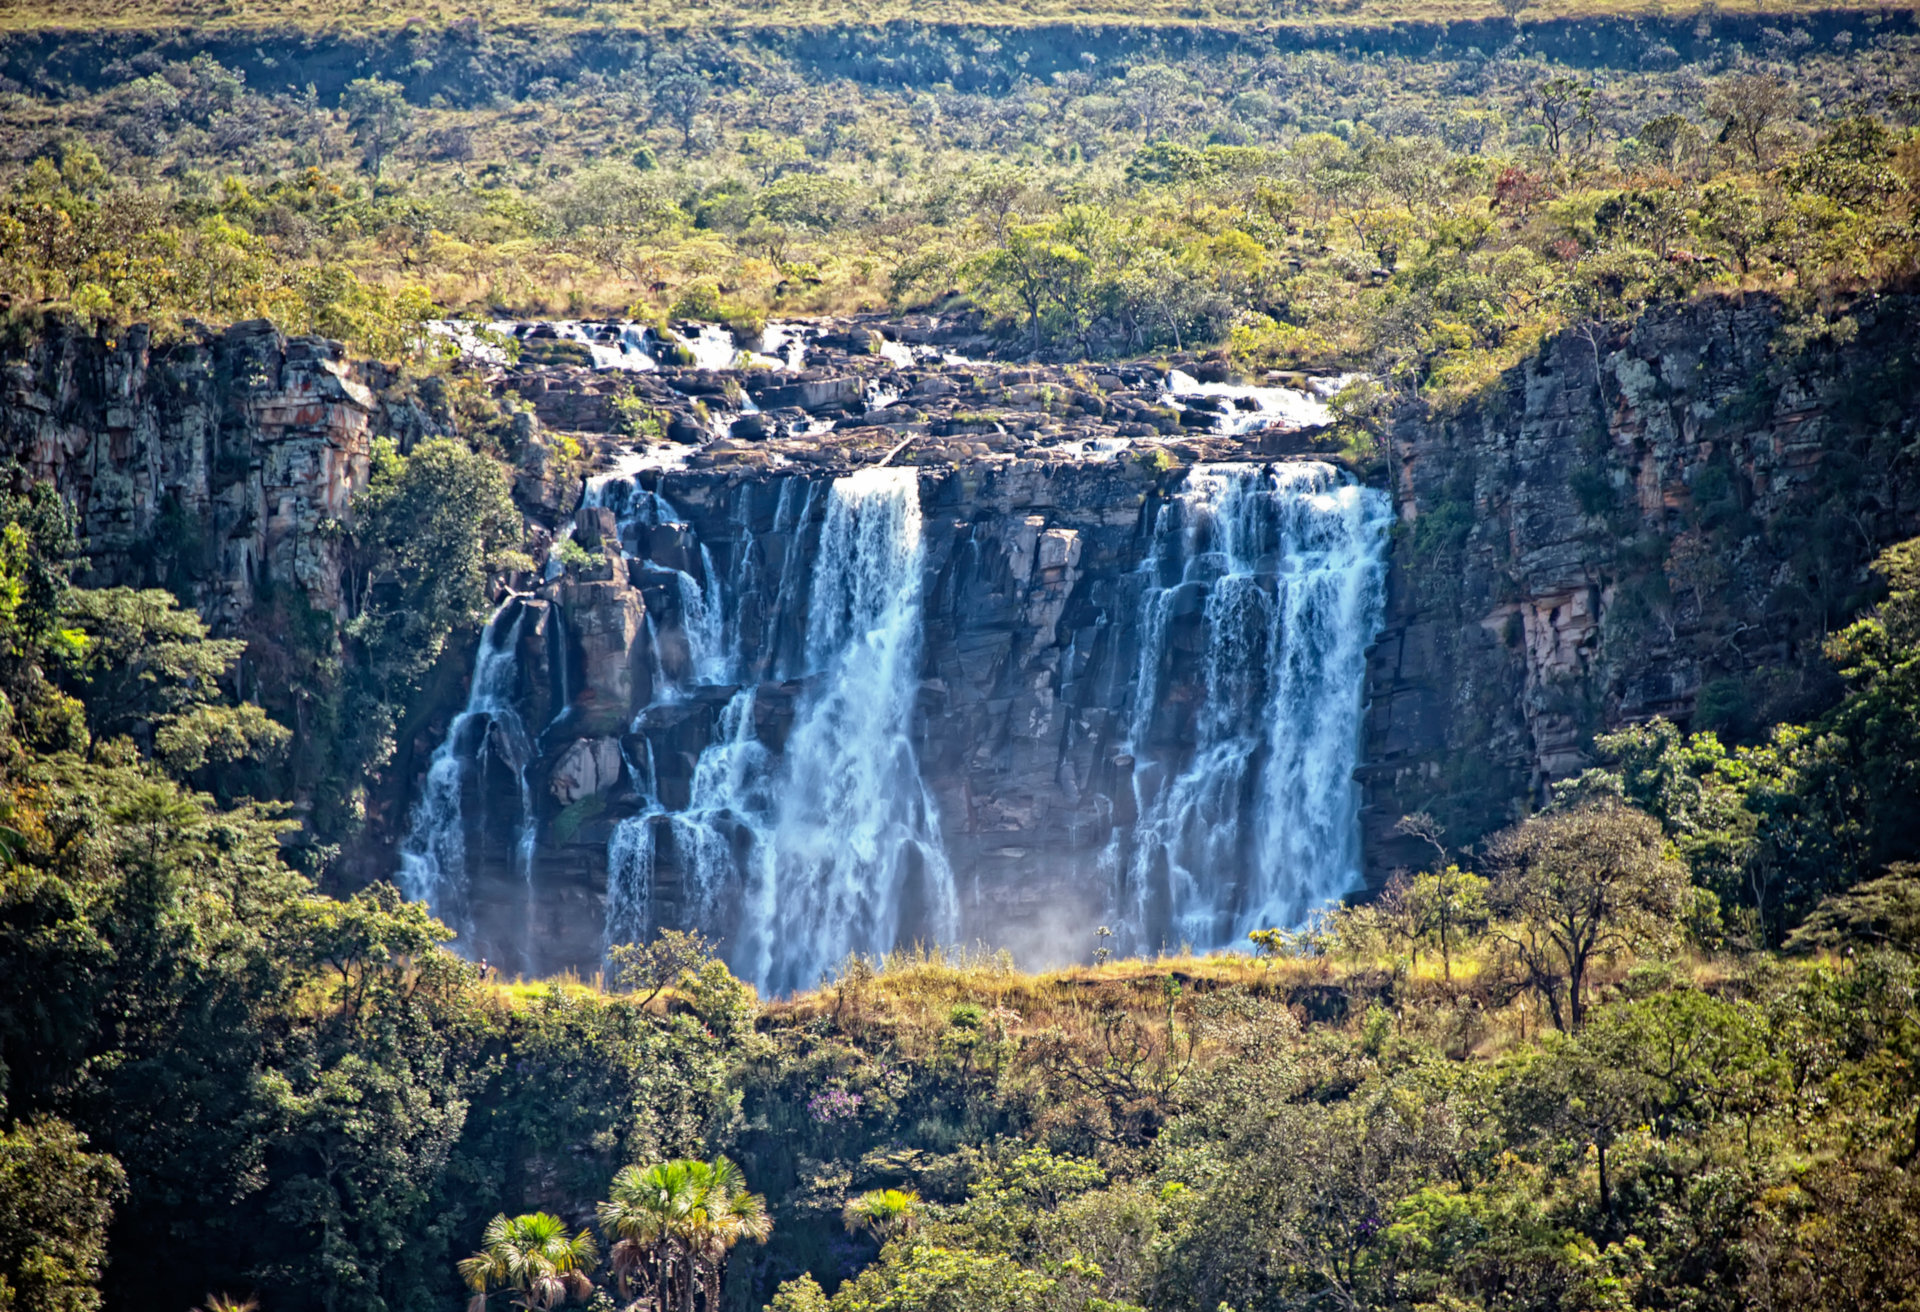 Não deixe de apreciar a paisagem da bela cachoeira de Salto de Corumbá, em Goiás